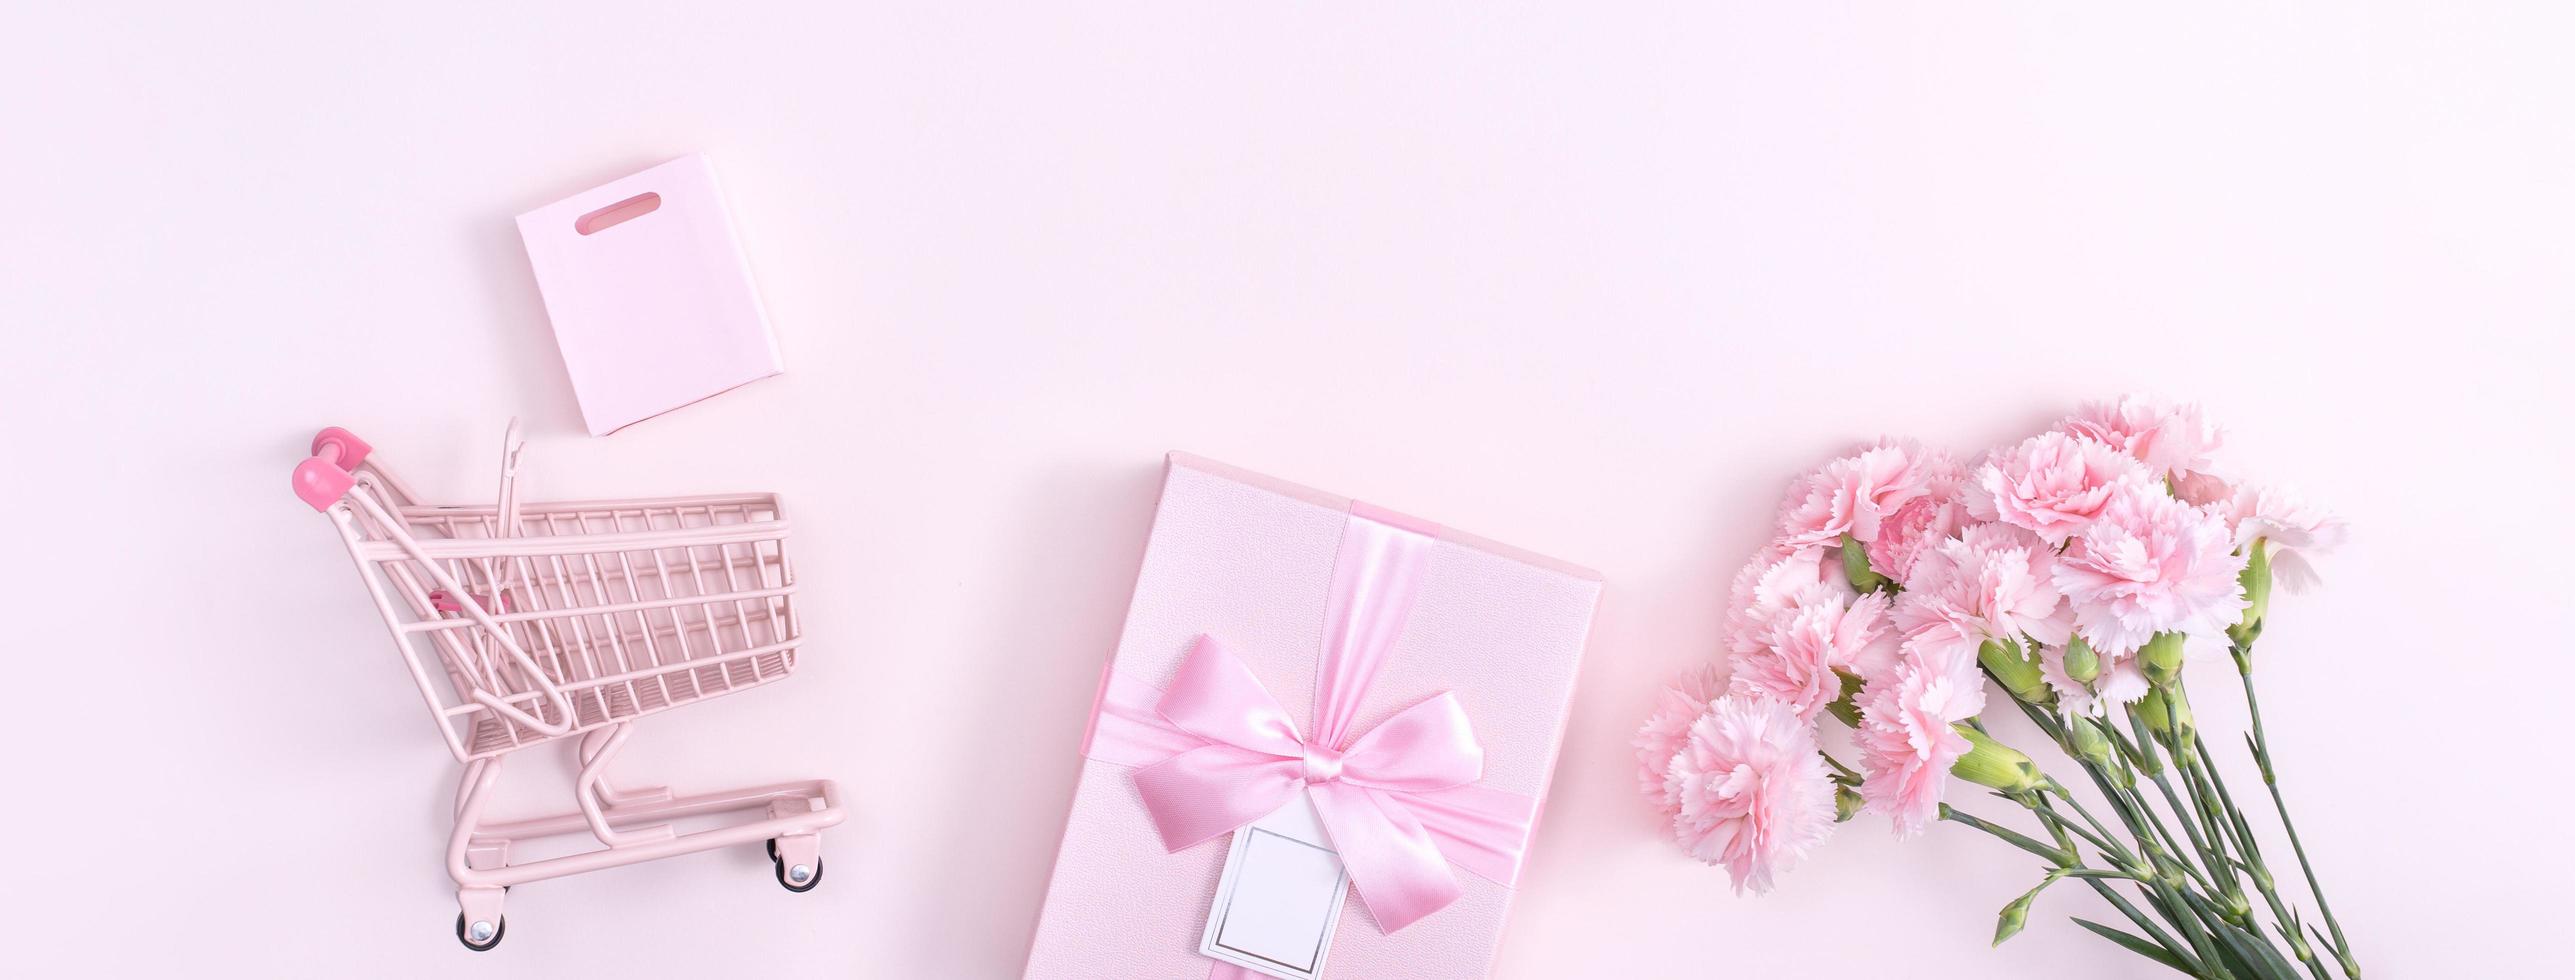 día de la madre, concepto de diseño de fondo del día de San Valentín, hermoso ramo de flores de clavel rosa en una mesa rosa pastel, vista superior, puesta plana, espacio para copiar. foto